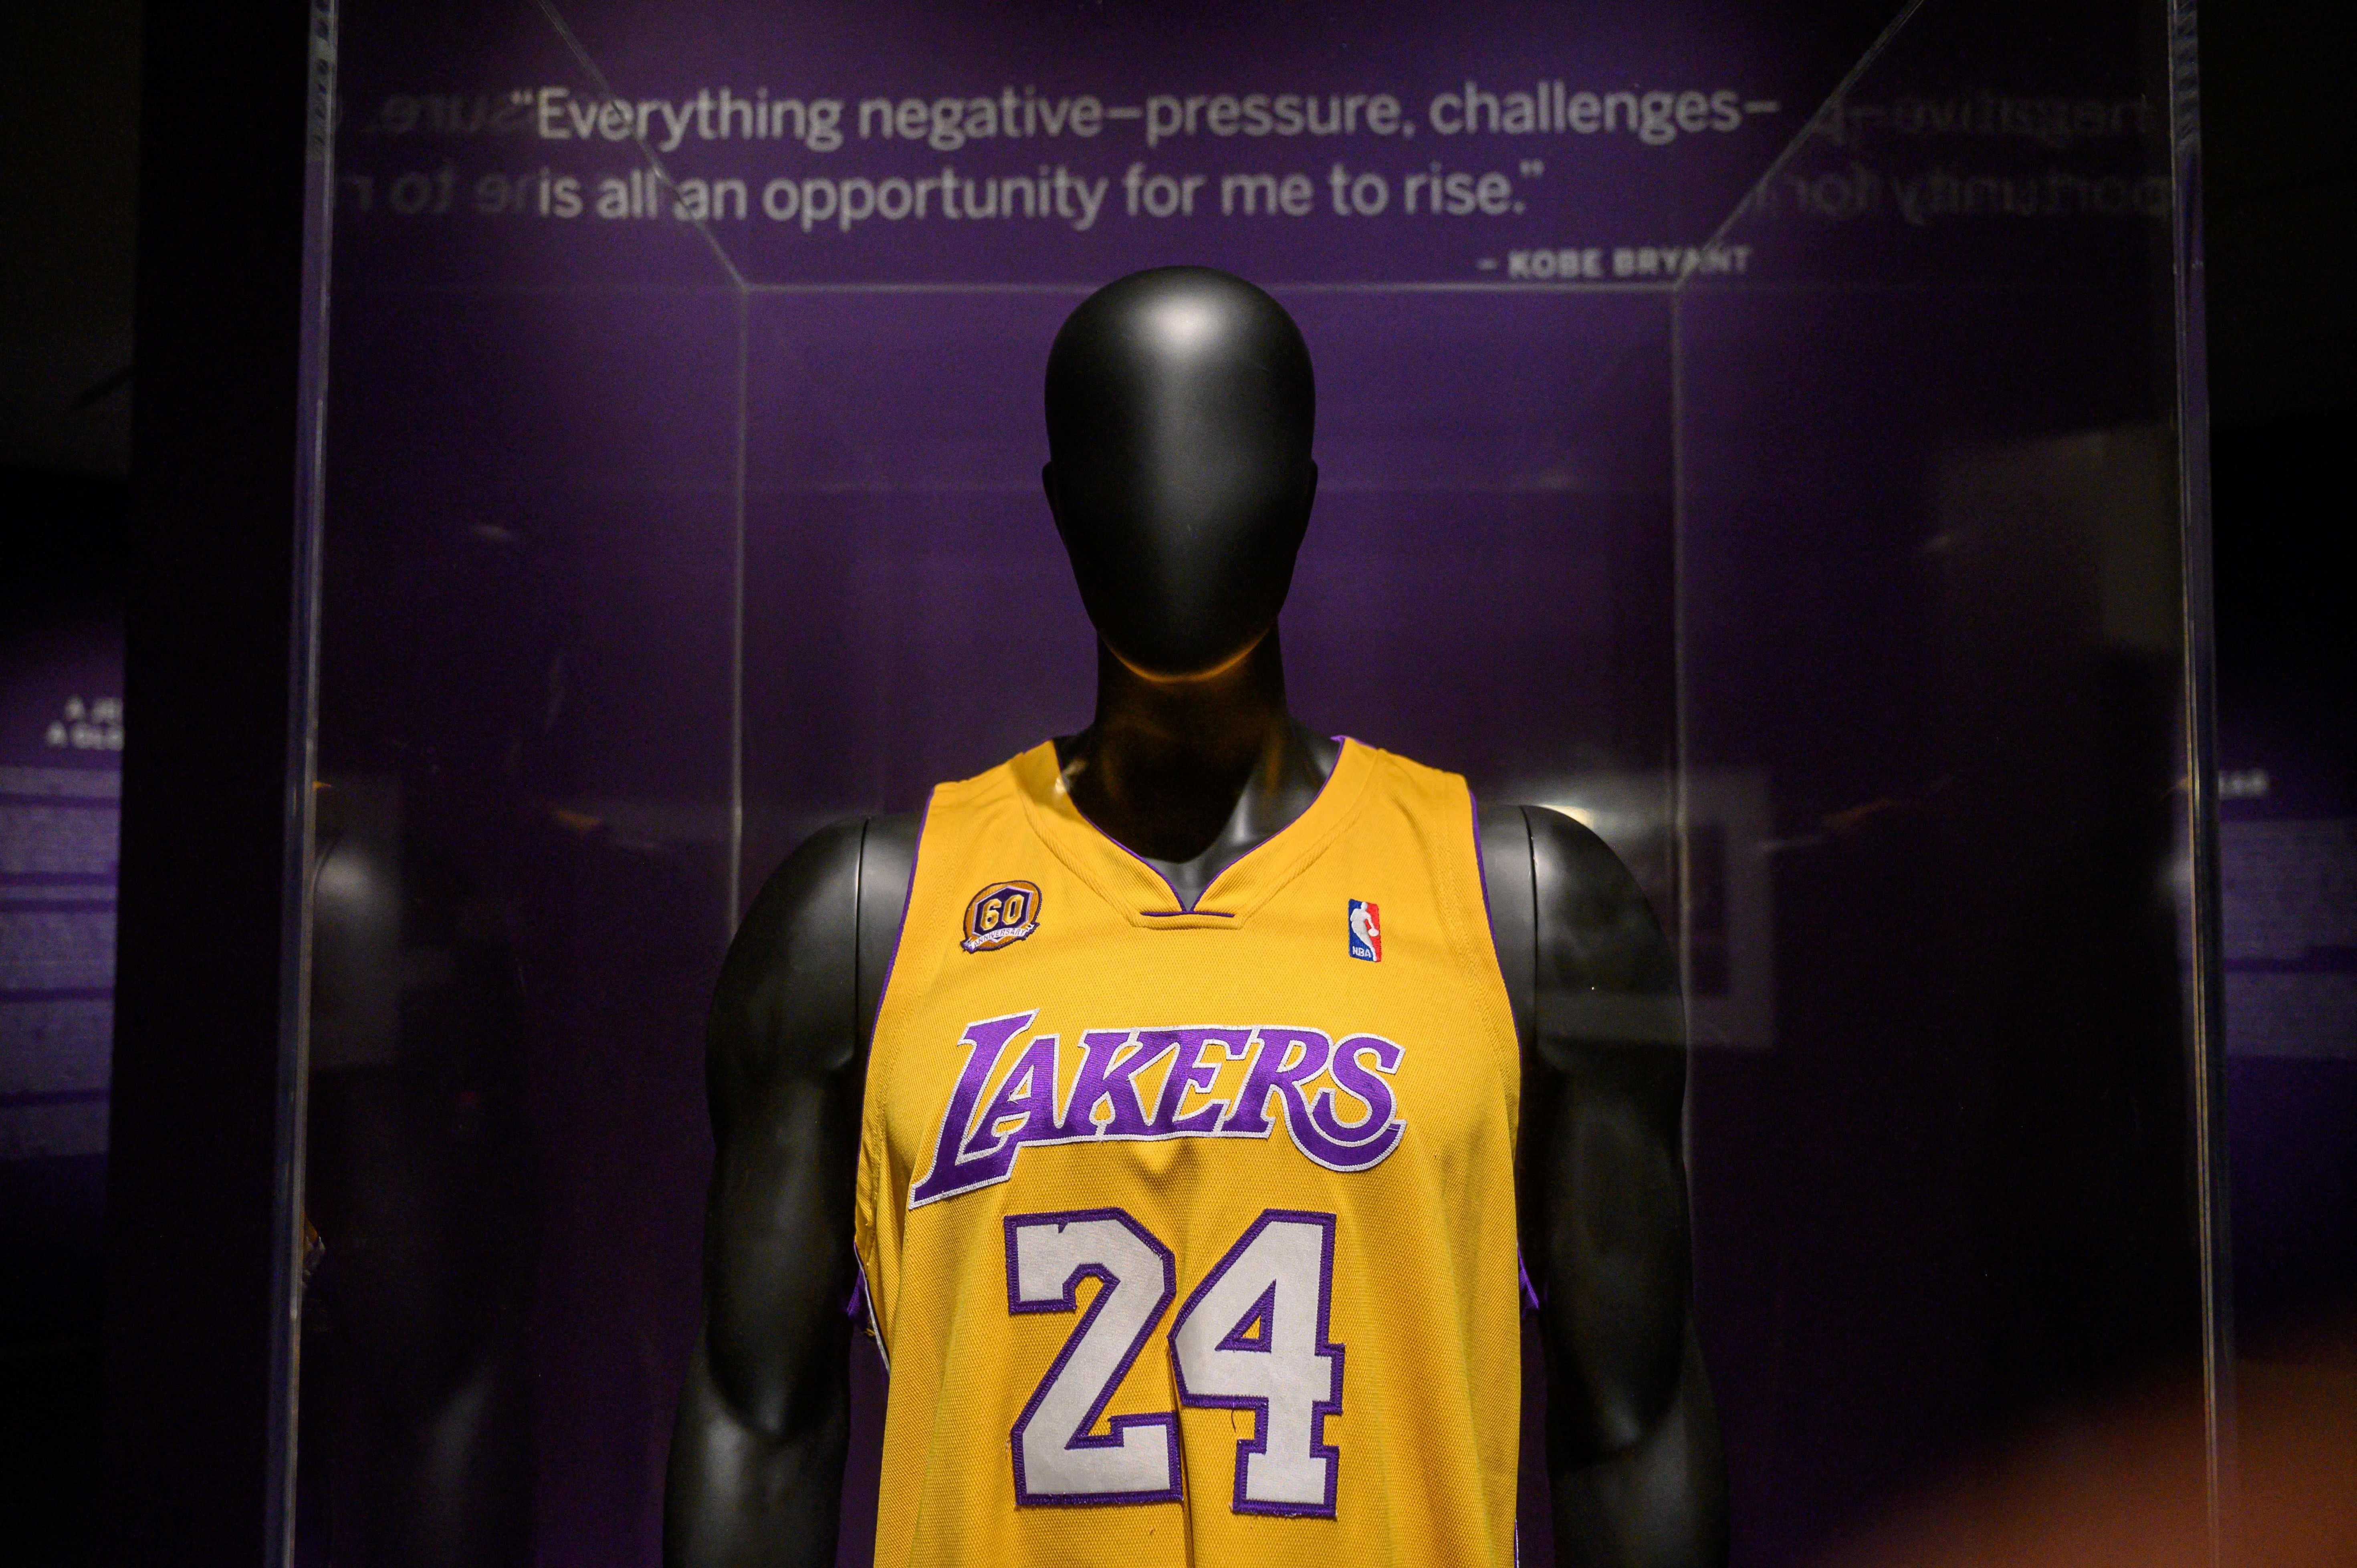 La playera de Kobe Bryant fue vendida fue vendida por una cifra millonaria. (Foto Prensa Libre: AFP).